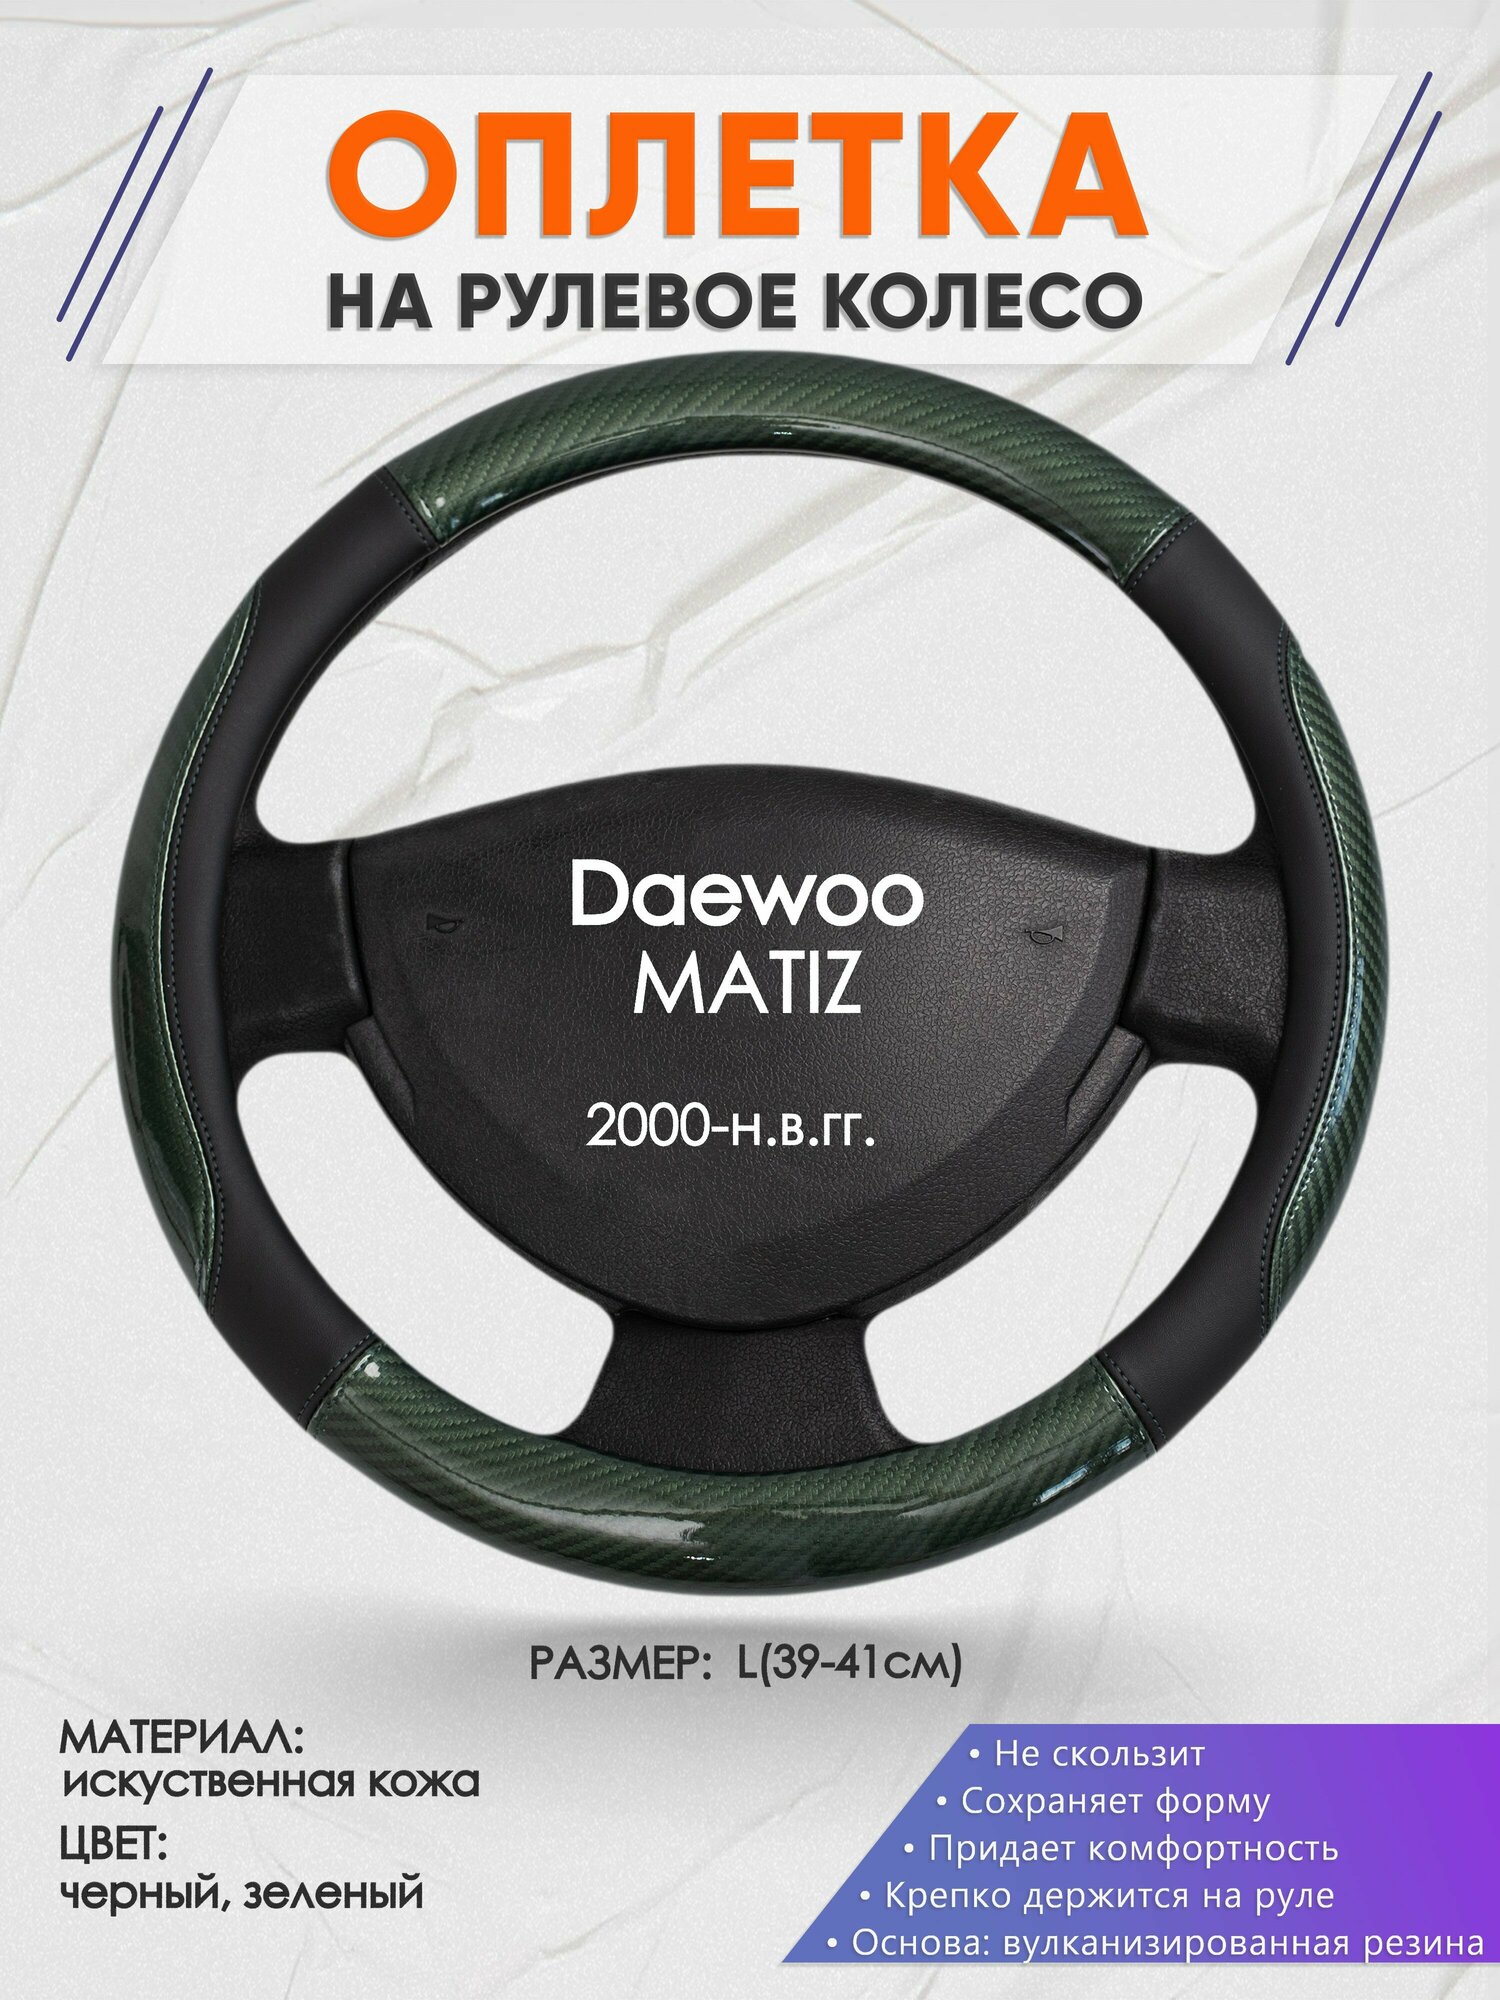 Оплетка на руль для Daewoo MATIZ(Дэу Матиз) 2000-н. в, L(39-41см), Искусственная кожа 19